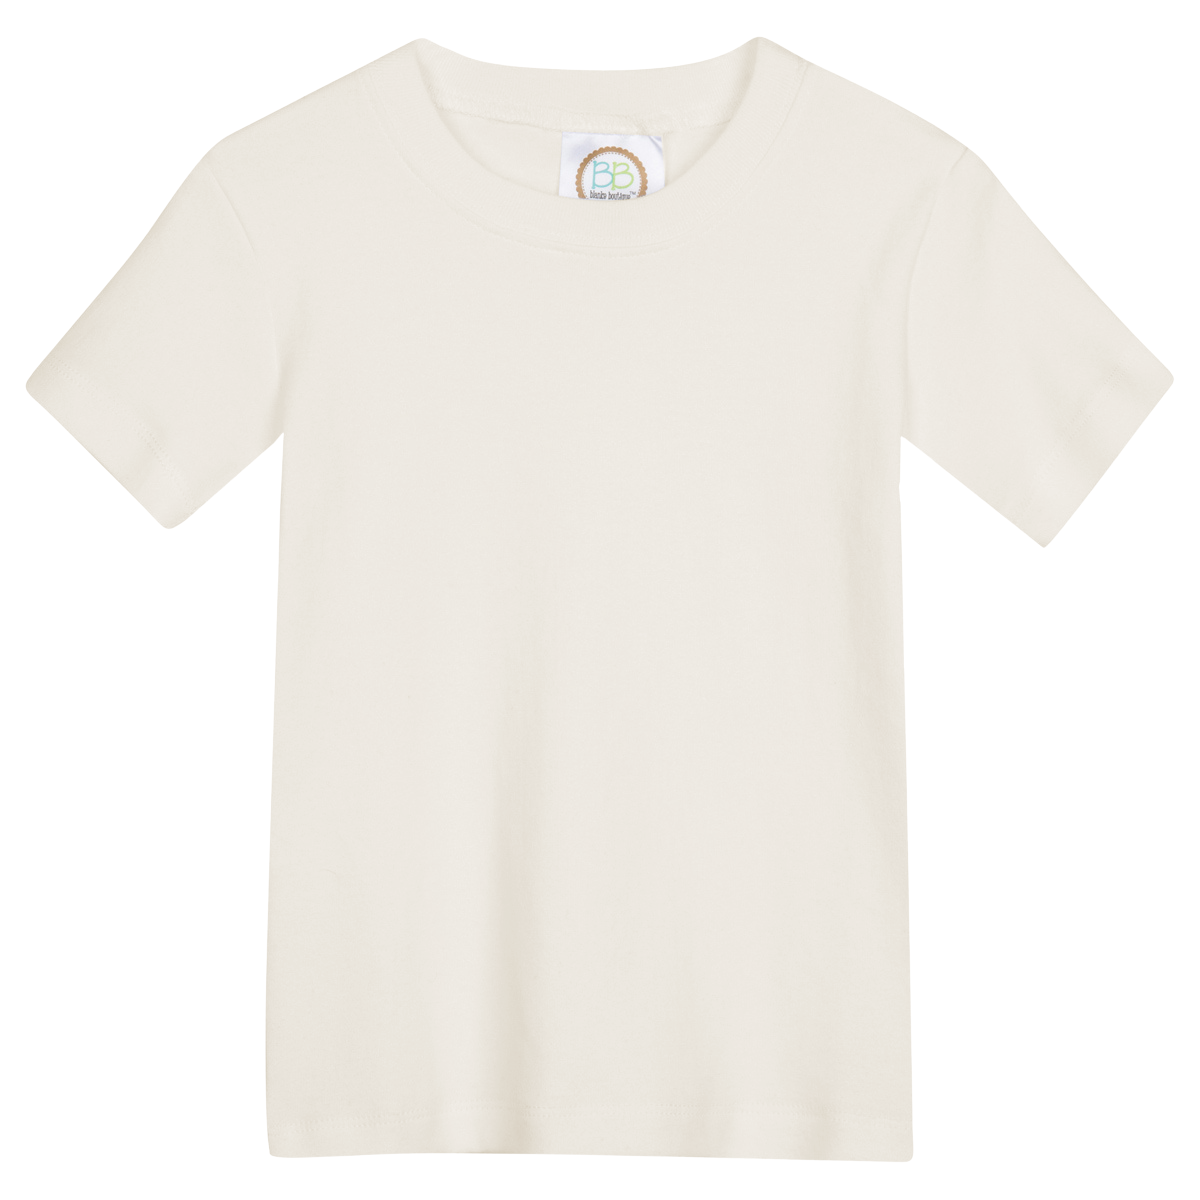 Blank Boy's Short Sleeve Tee Shirt